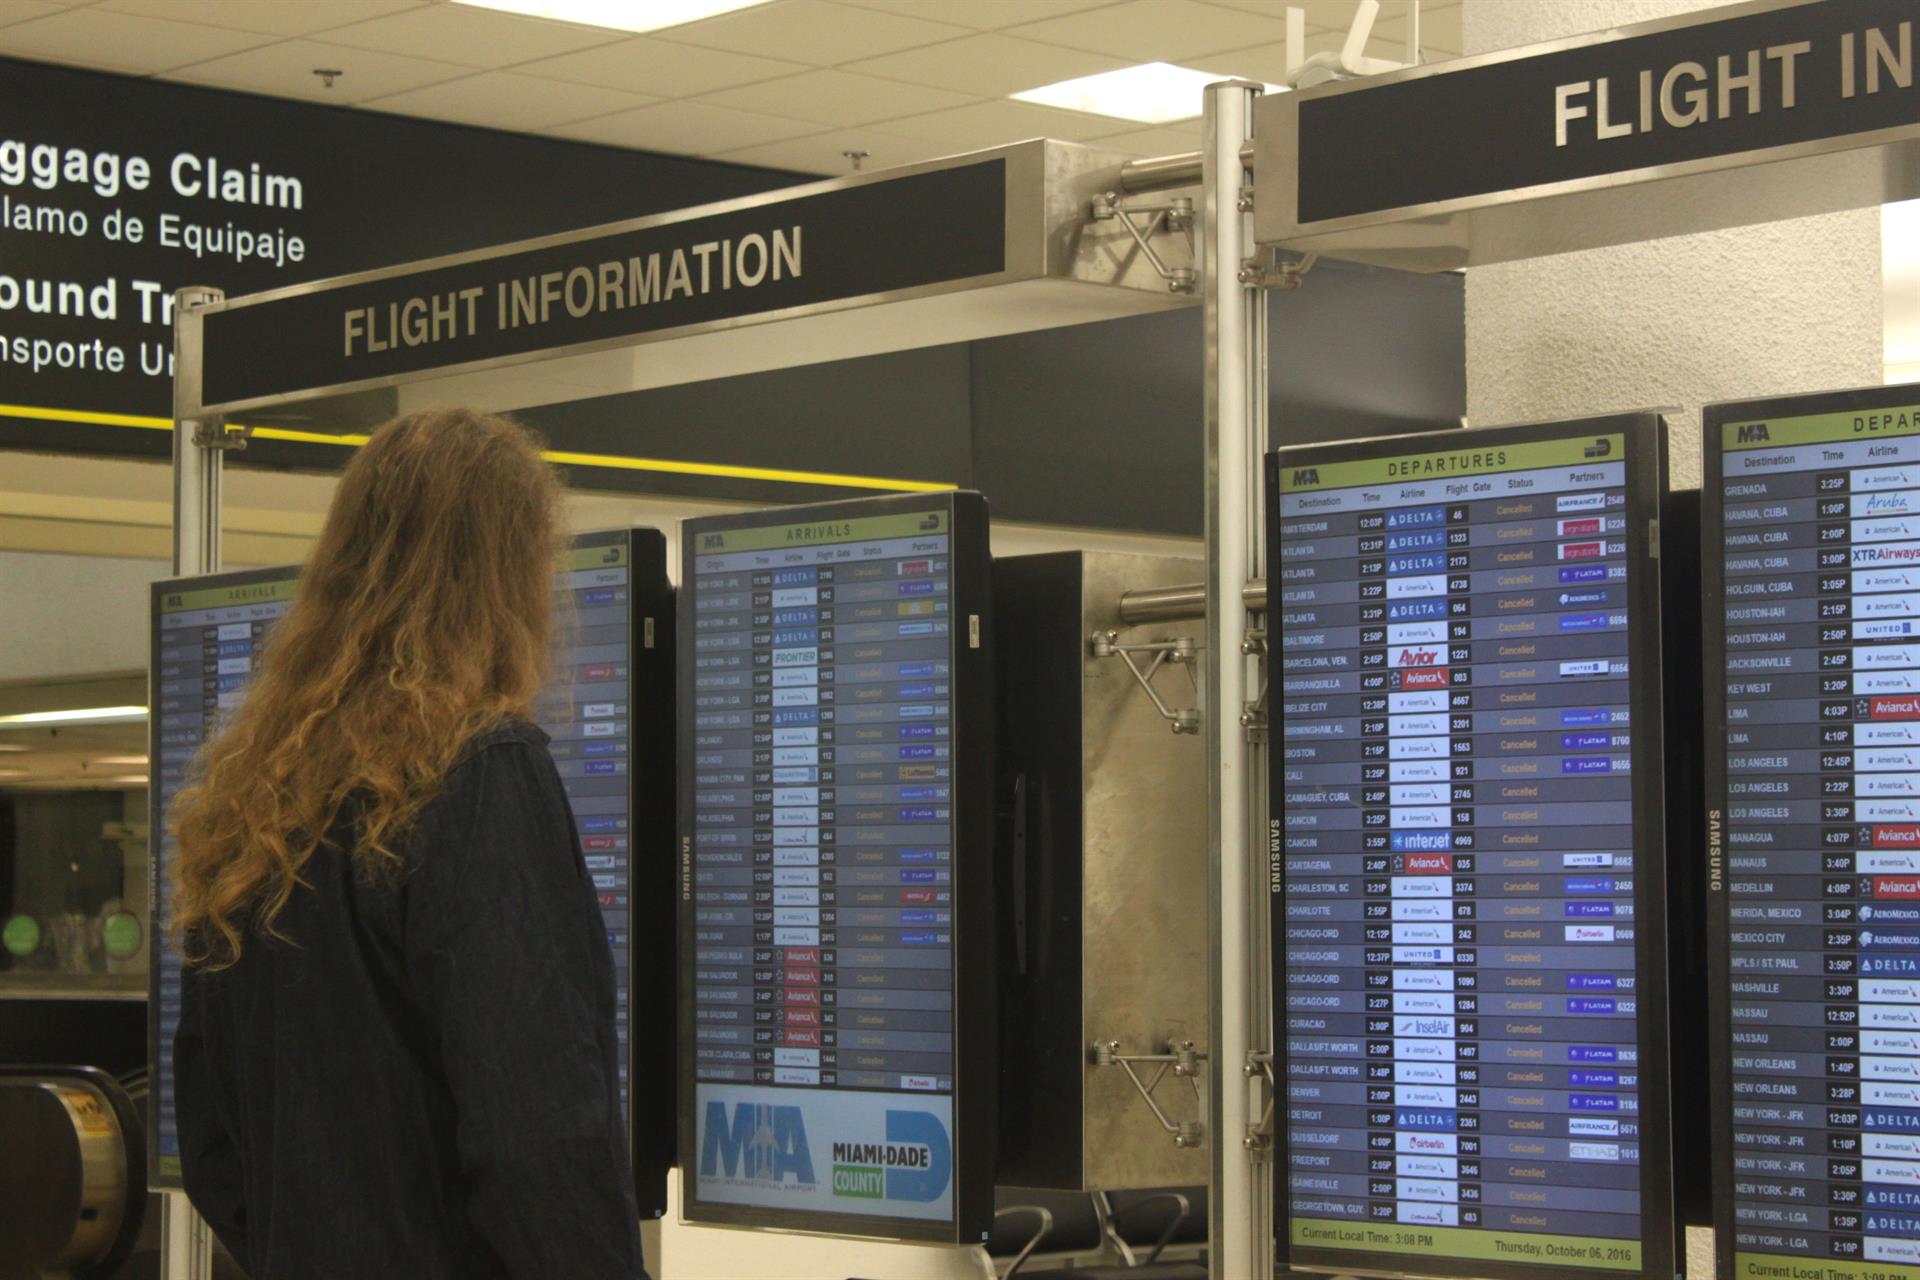 Una mujer observa el panel de salida y llegada de vuelos en un vacío aeropuerto de Miami (Florida), imagen de archivo. EFE/RODRIGO MIRAGAYA
